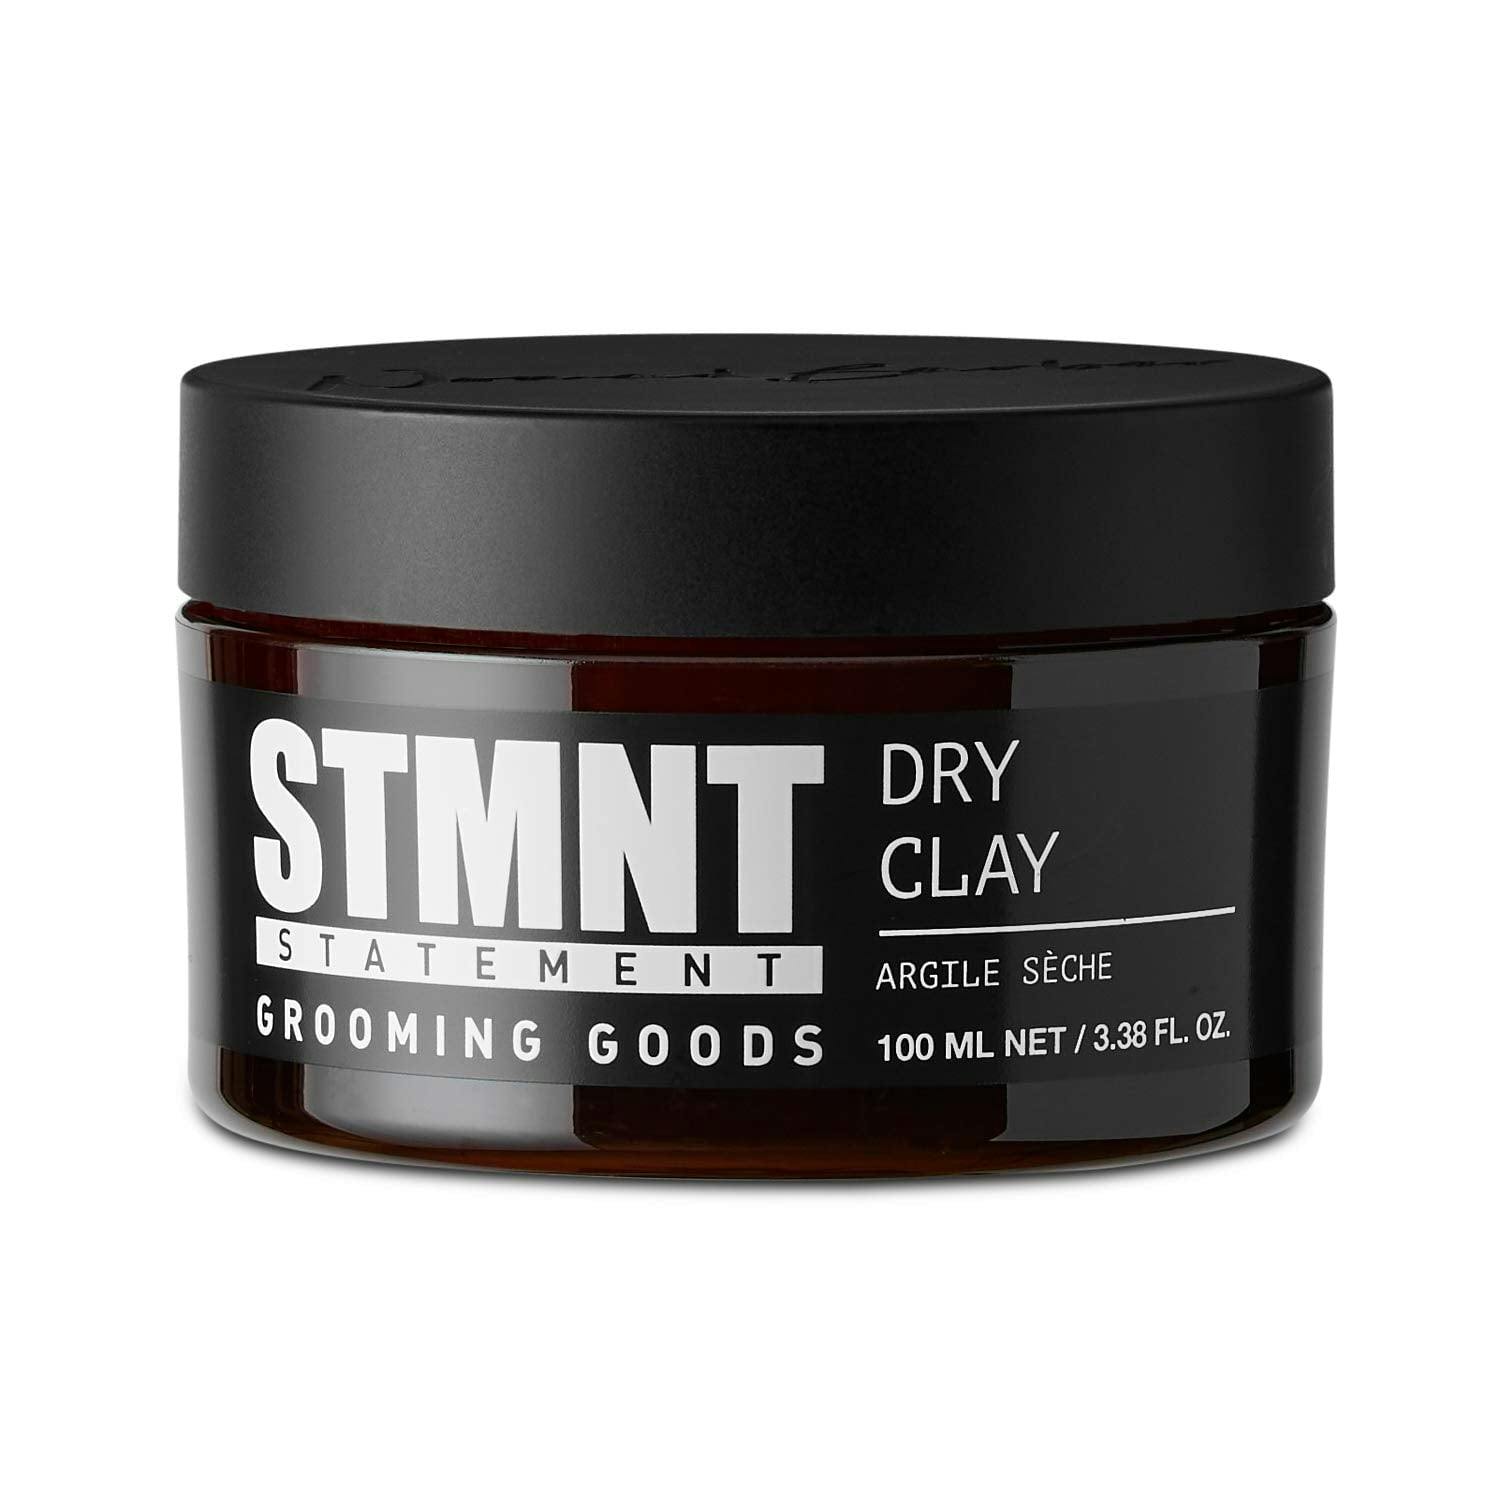 STMNT Grooming Goods Dry Clay 100mL